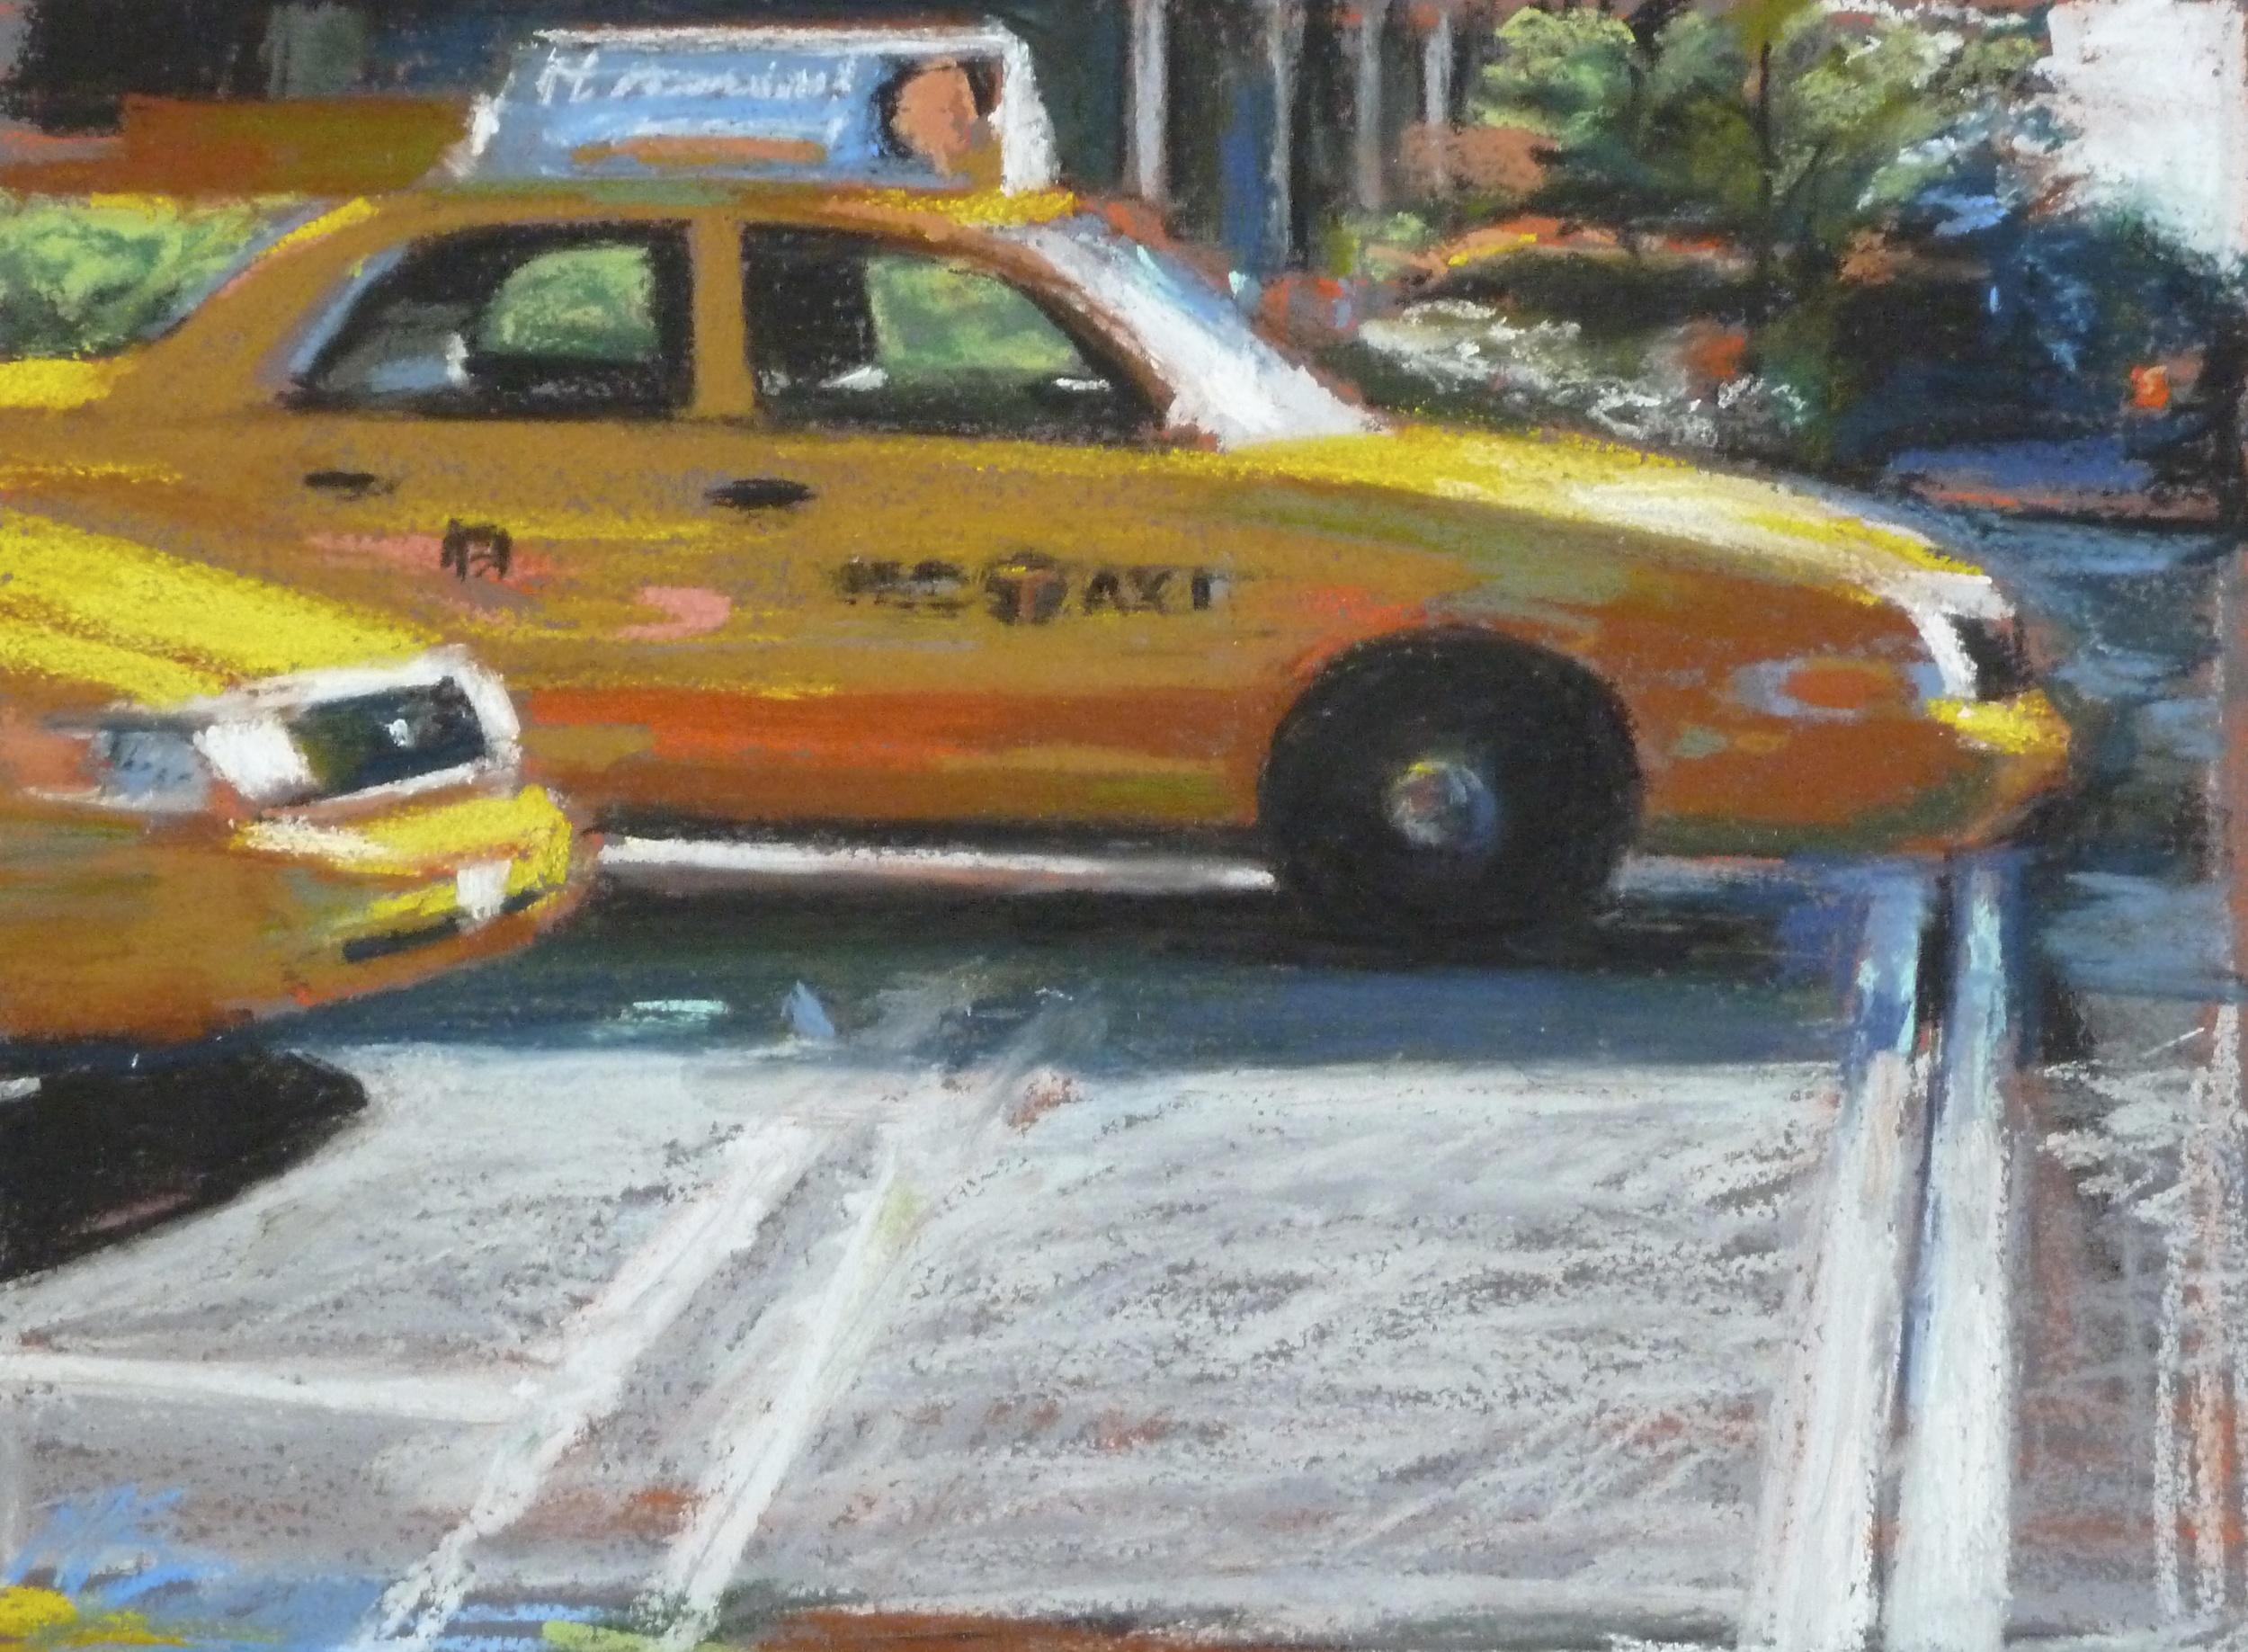 Lexington Avenue Taxis